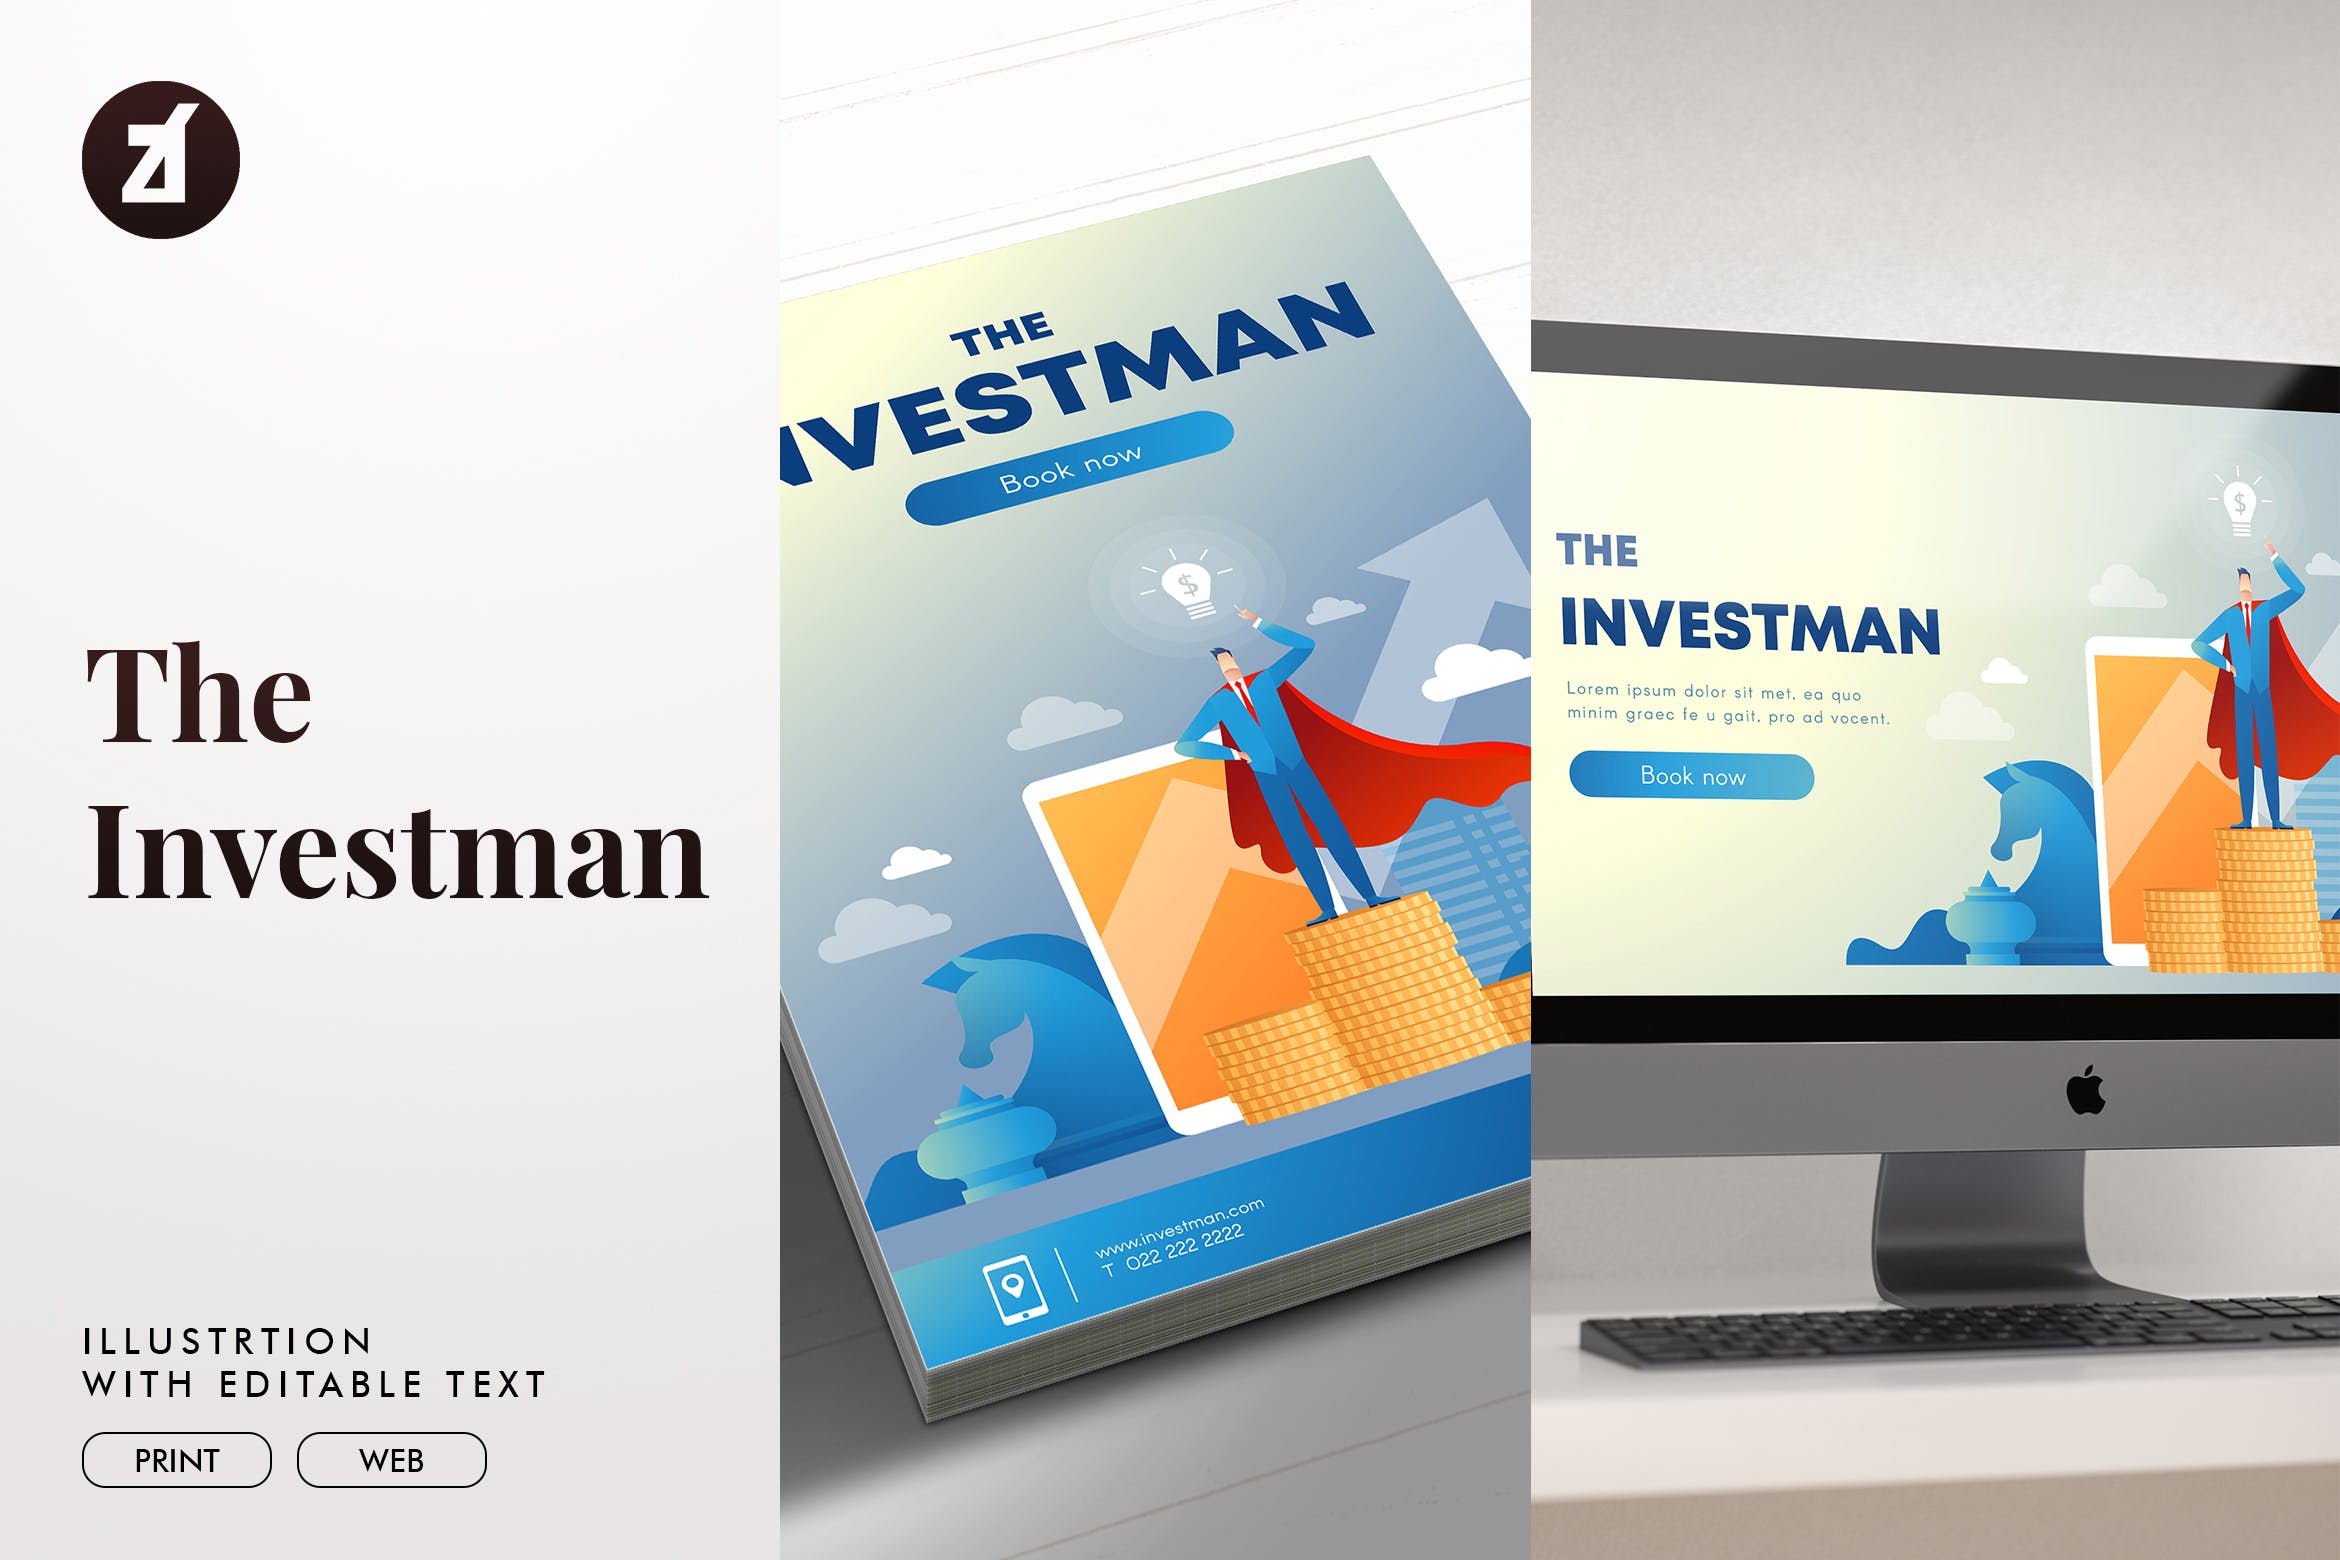 投资者主题矢量非凡图库精选概念插画素材 The investman illustration with text layout插图